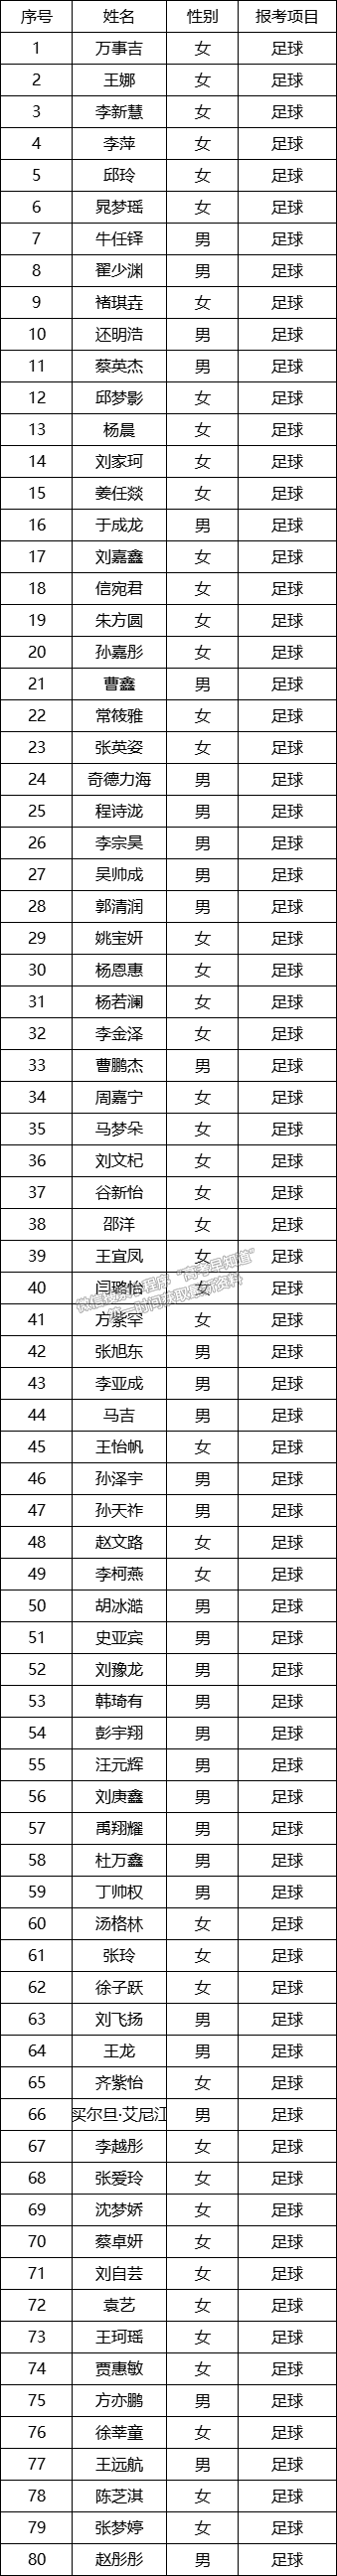 河南师范大学2020年高水平运动队报名材料初审结果公示